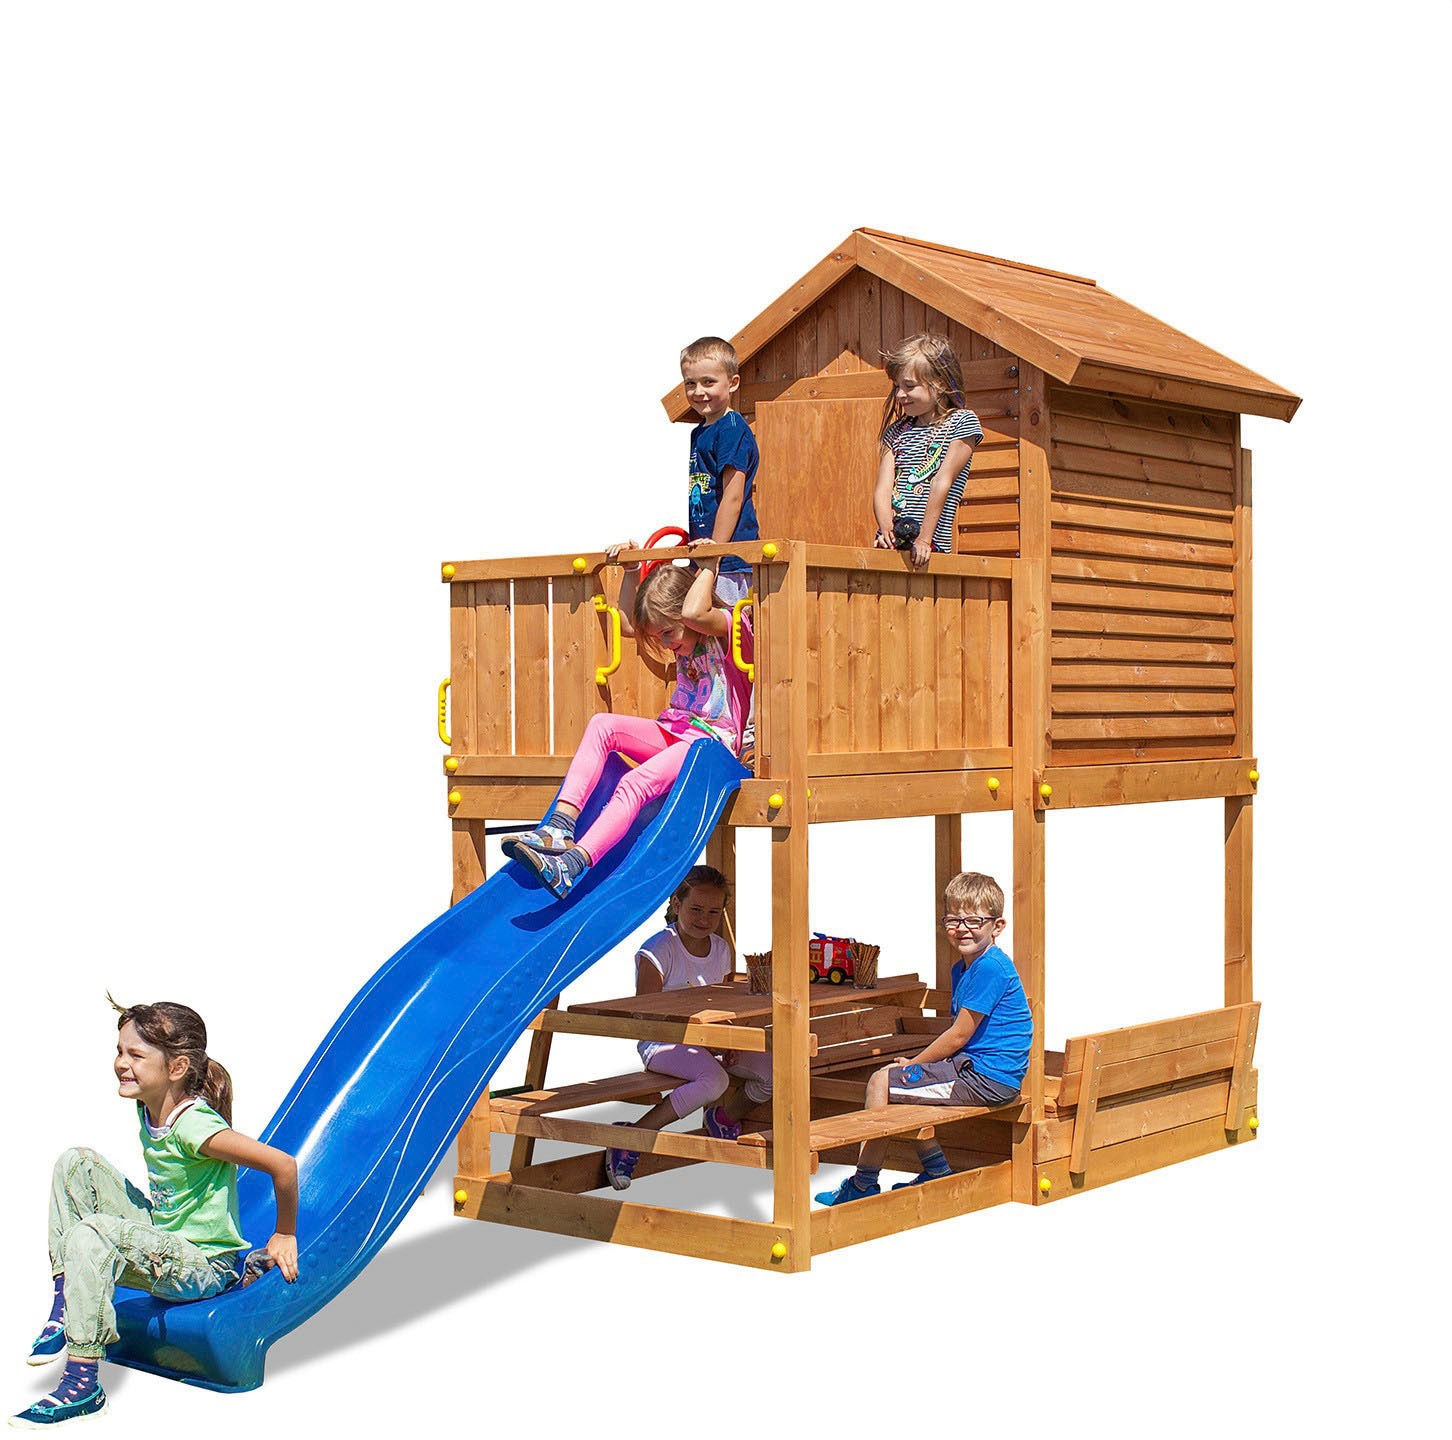 FUNGOO Spielturm »My HOUSE Free Time Beach«, mit Schaukel & Rutsche, Spielhaus, Sandkasten, Picknick-Tisch